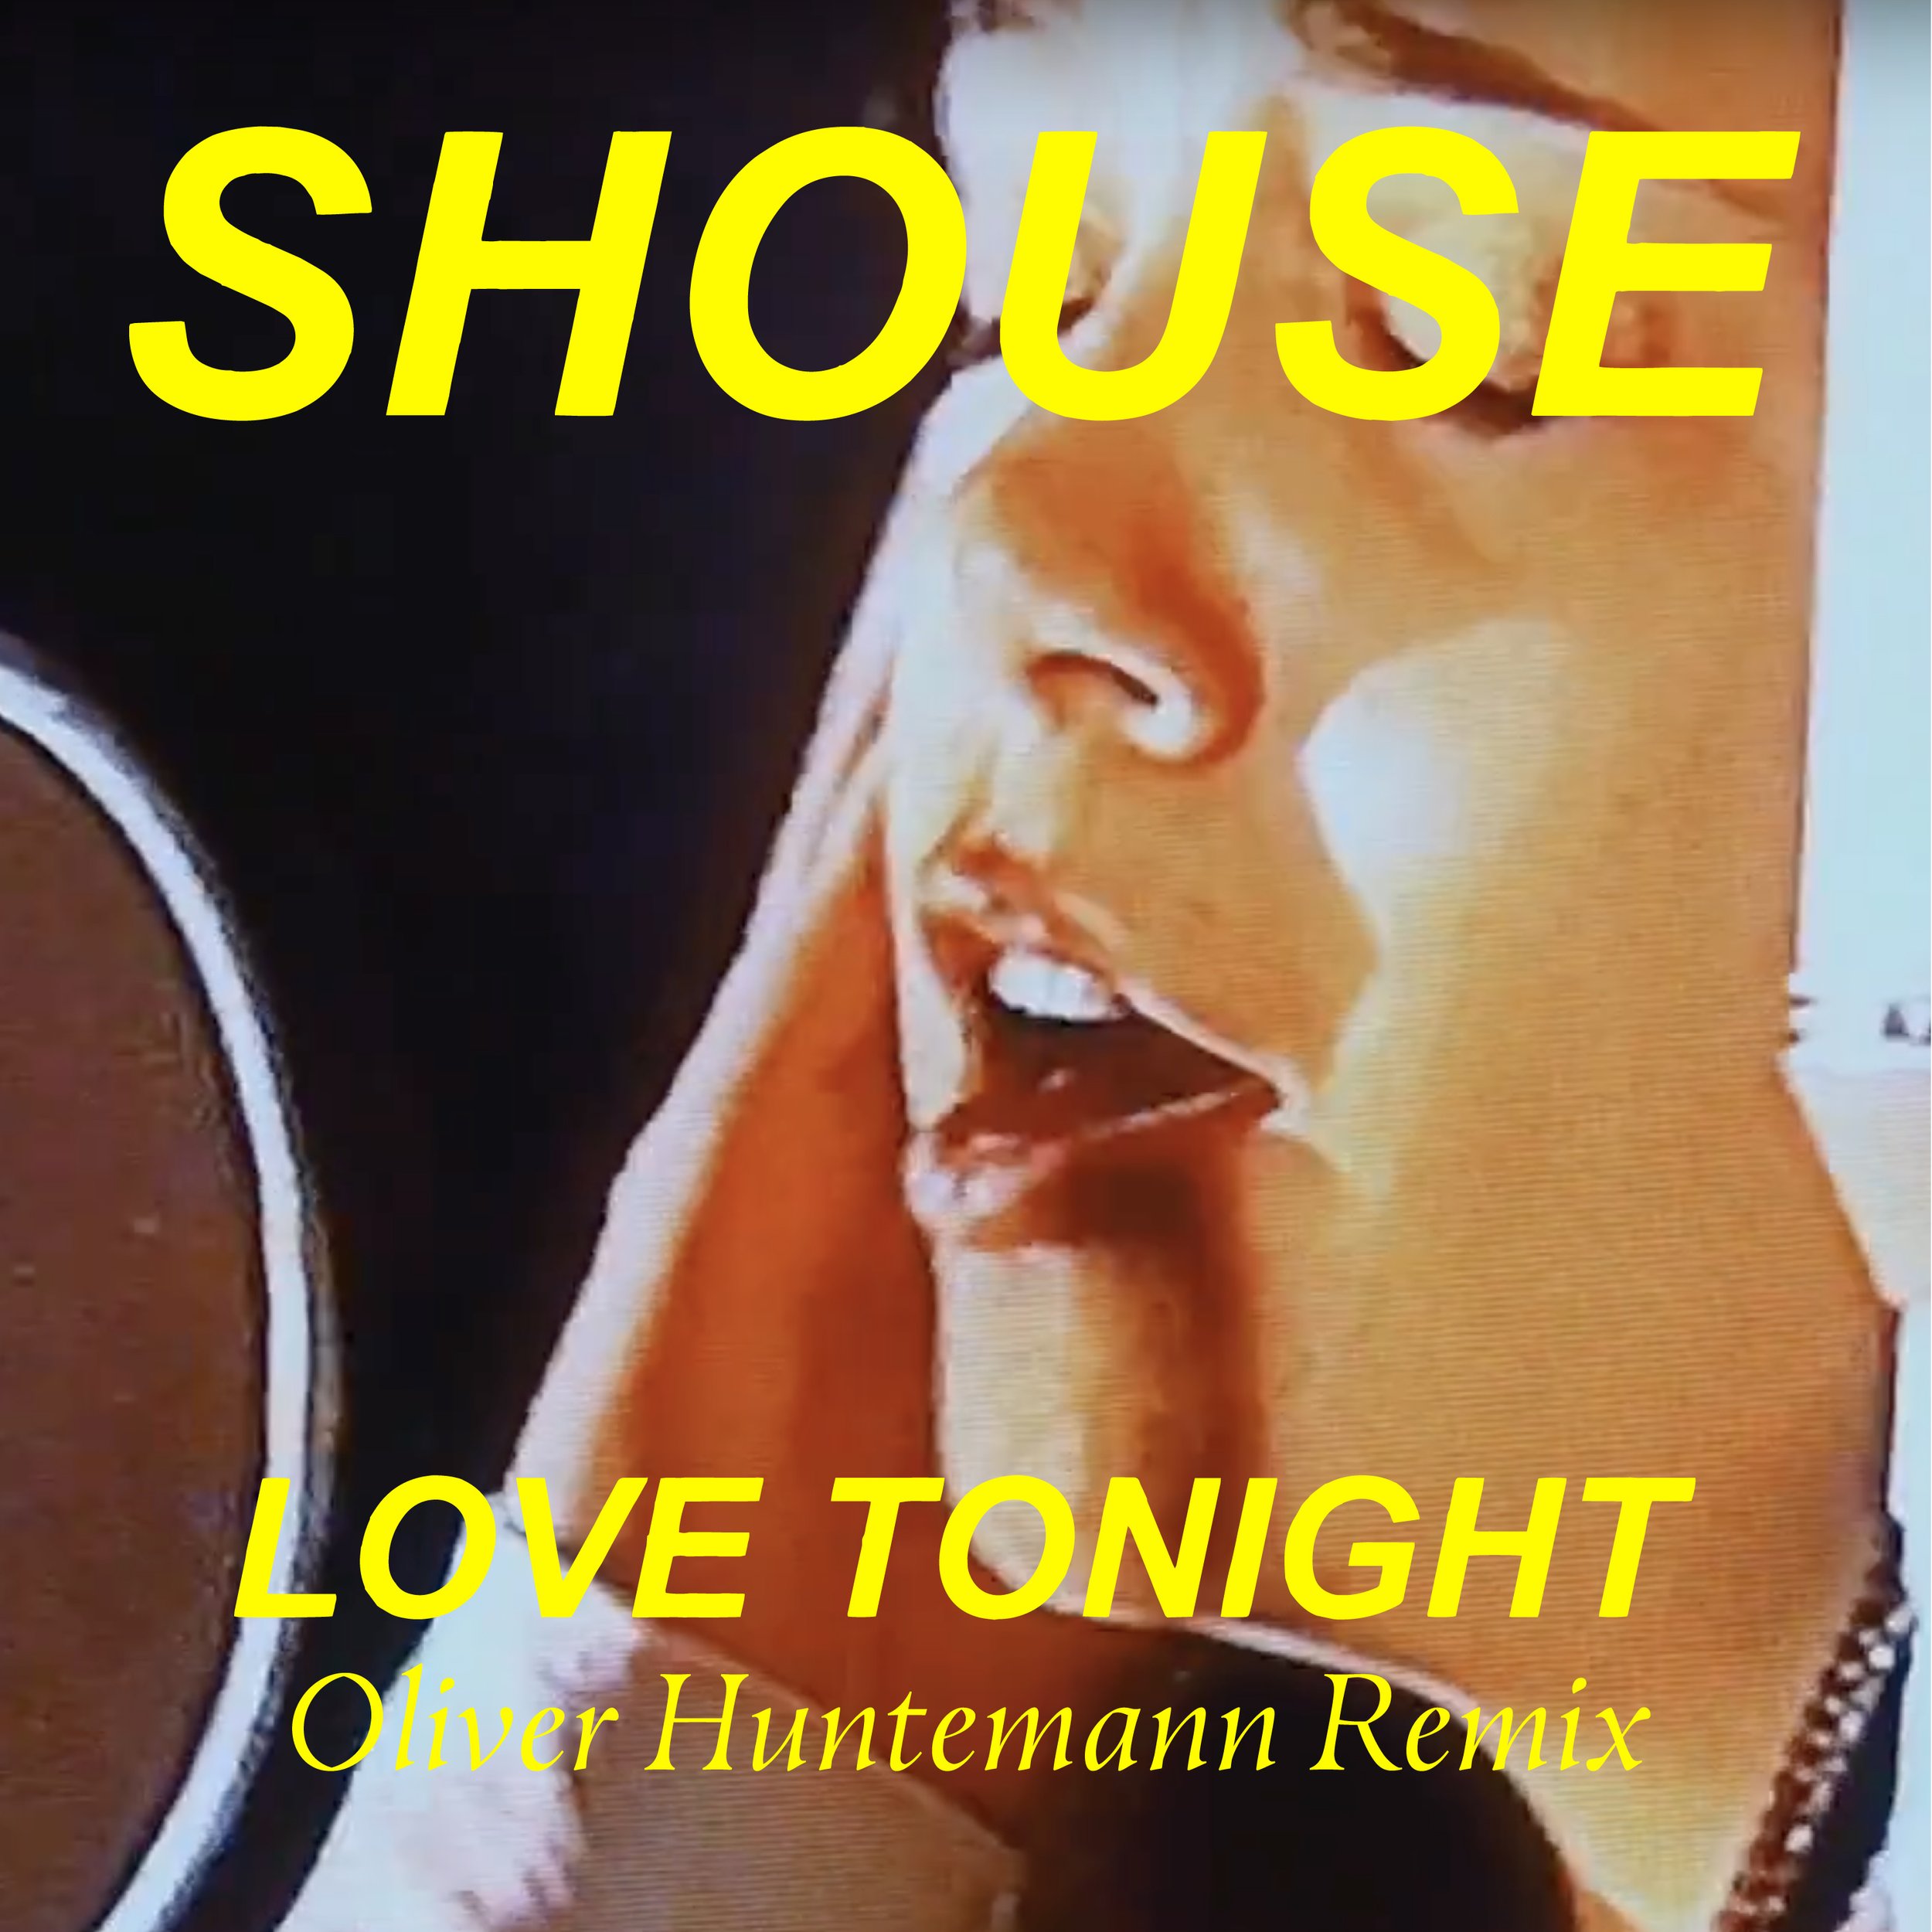 Shouse love remix. Shouse Love Tonight. Shouse Love Tonight обложка. Shouse Love Tonight 2021. Love Tonight (Edit) Shouse.